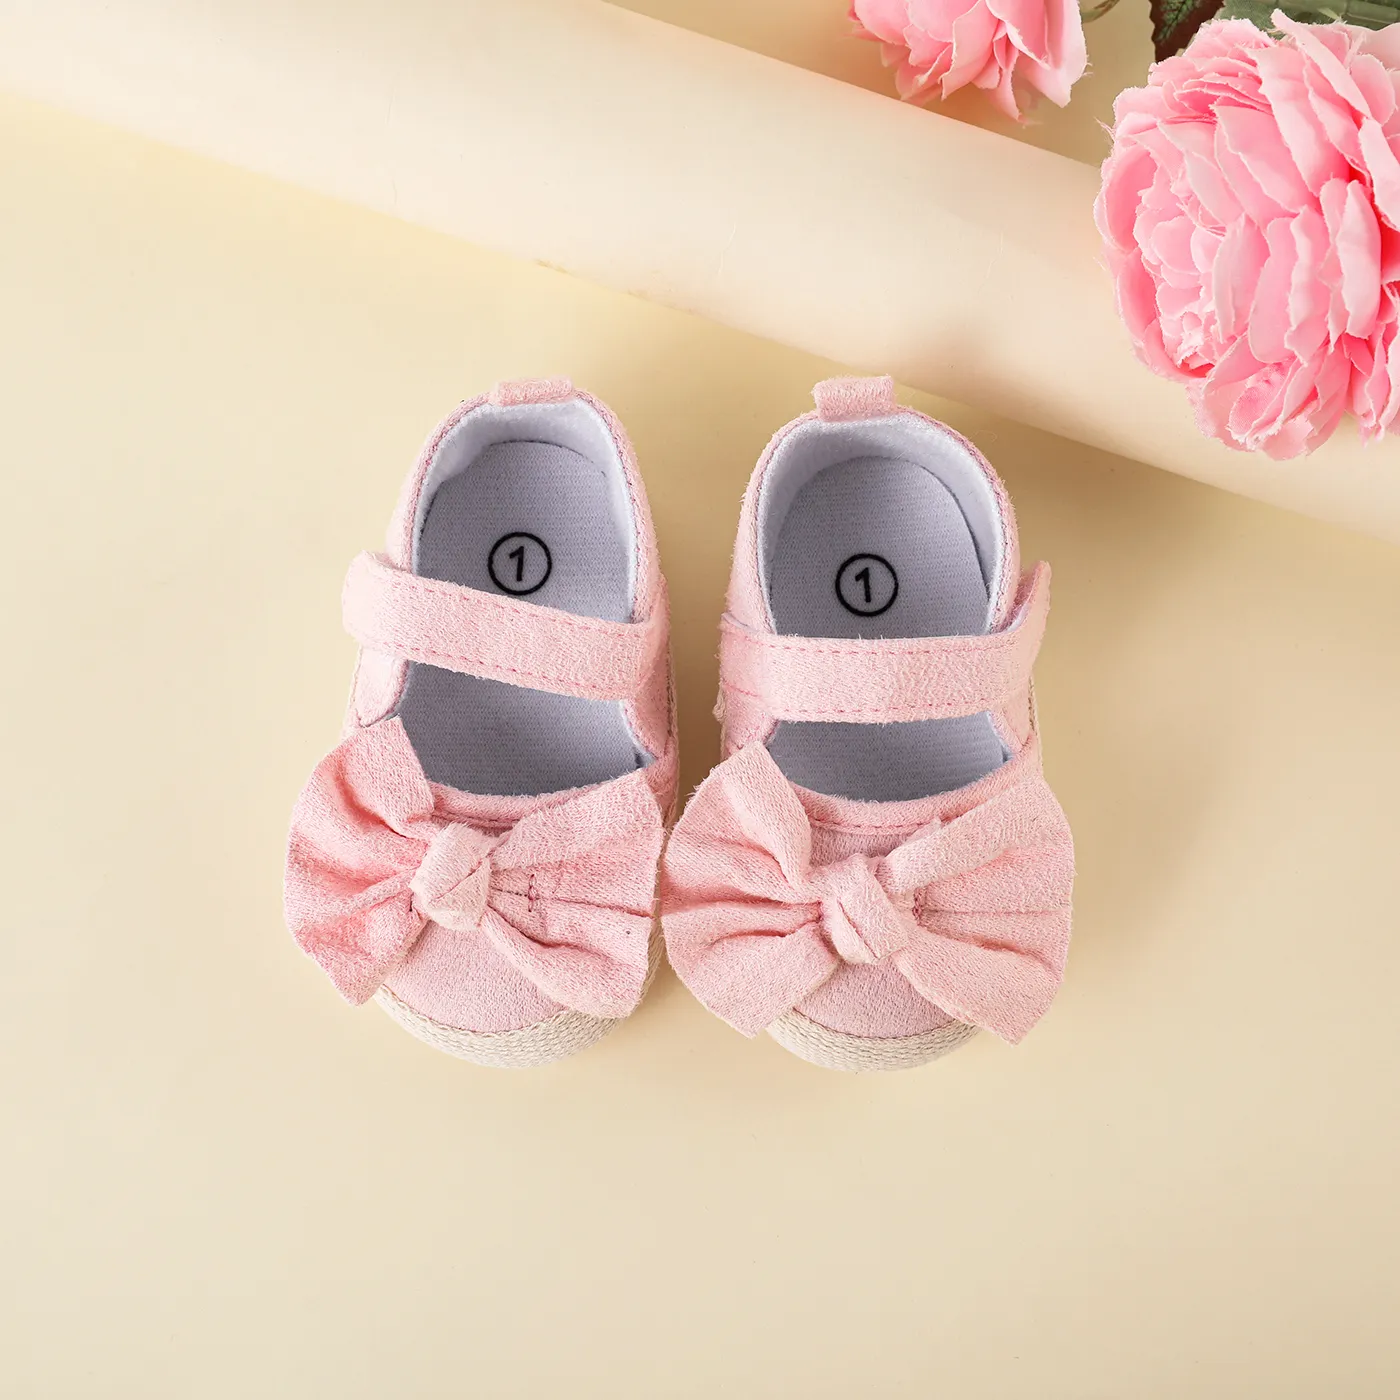 Bébé / Enfant En Bas âge Décor Arc Solide Chaussures Prewalker